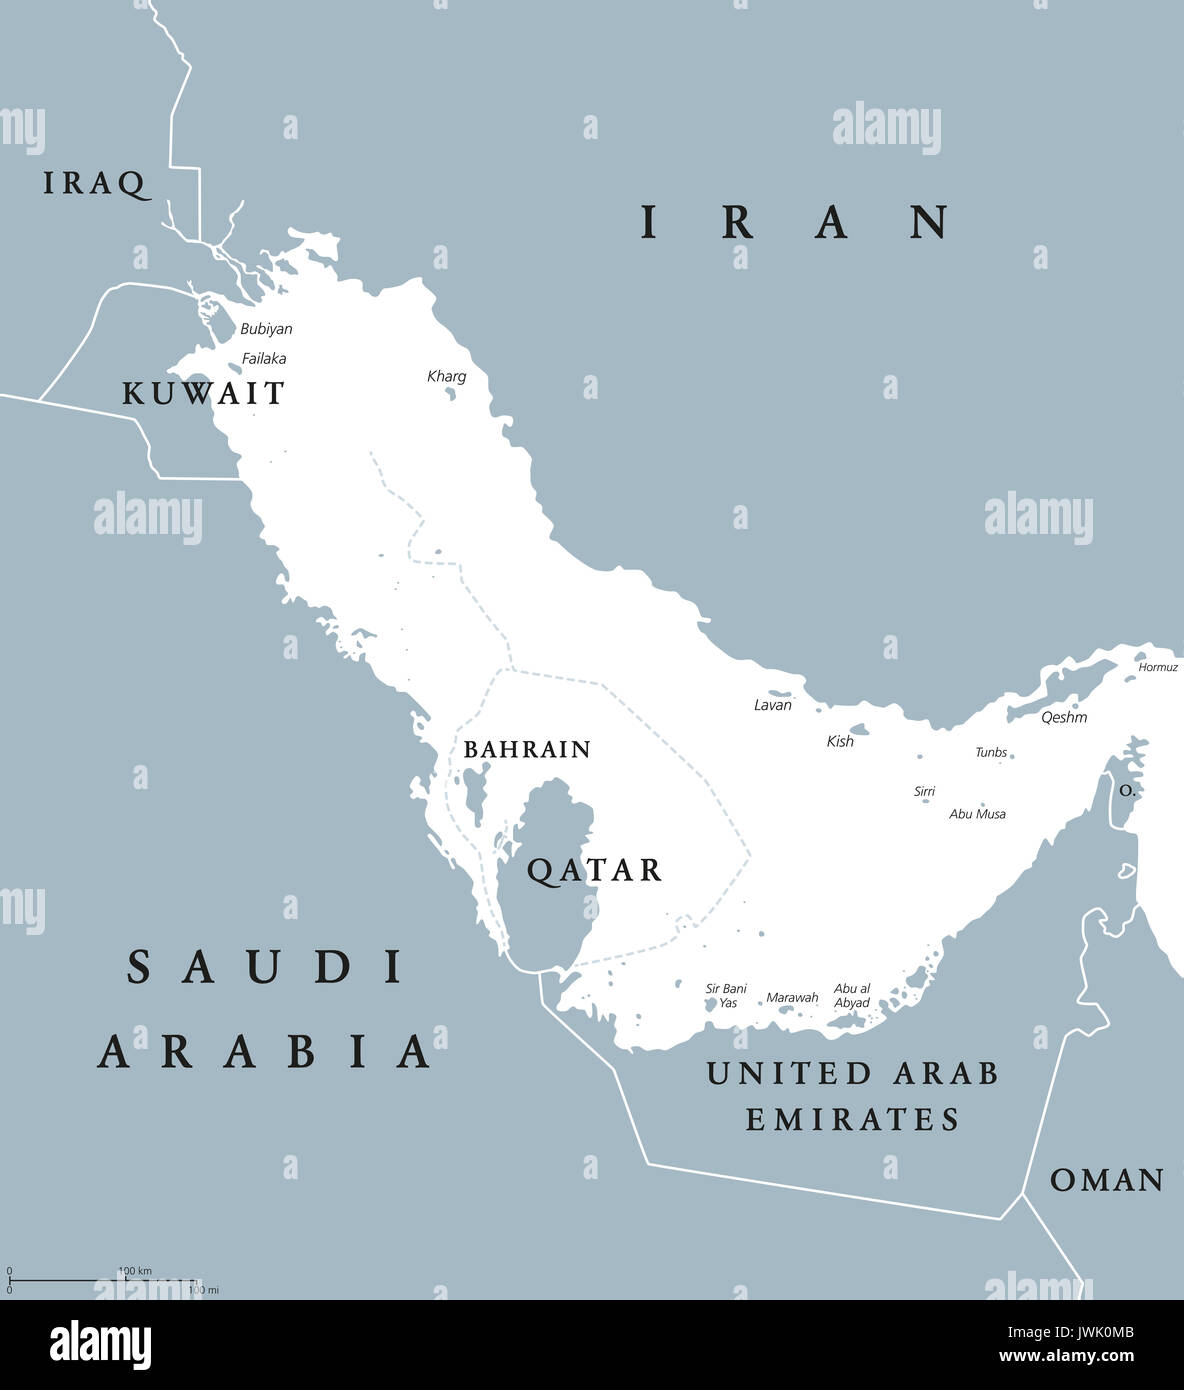 Zona del Golfo persico paesi mappa politico con etichetta inglese. Corpo di acqua ed estensione dell Oceano Indiano attraverso lo Stretto di Hormuz. Illustrazione. Foto Stock